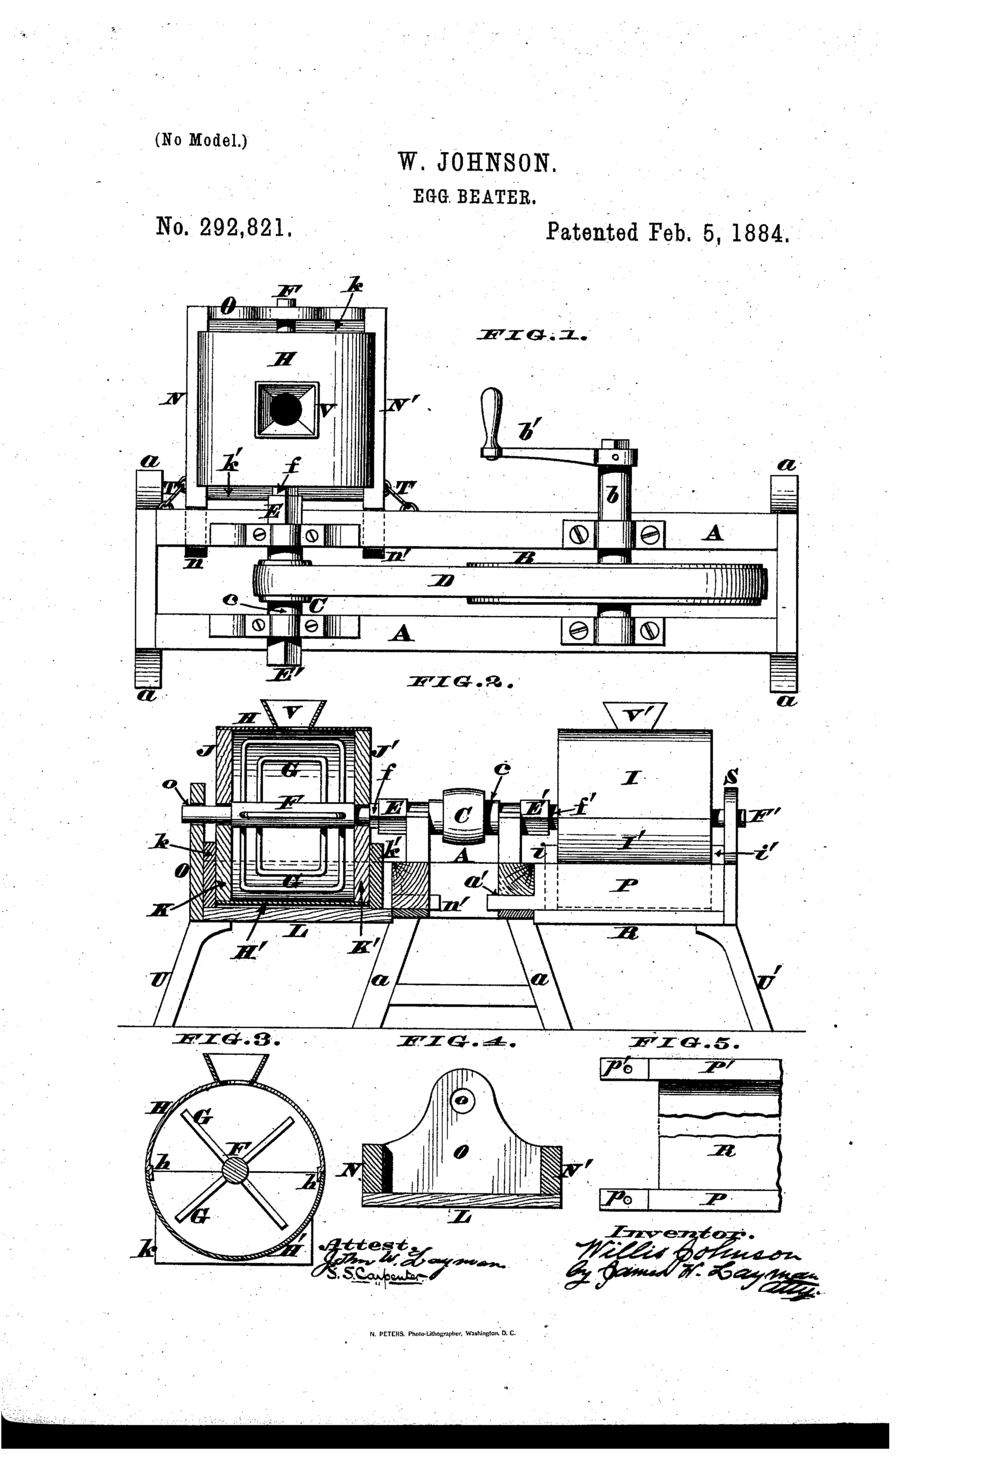 Patent illustration of W. Johnson's egg beater